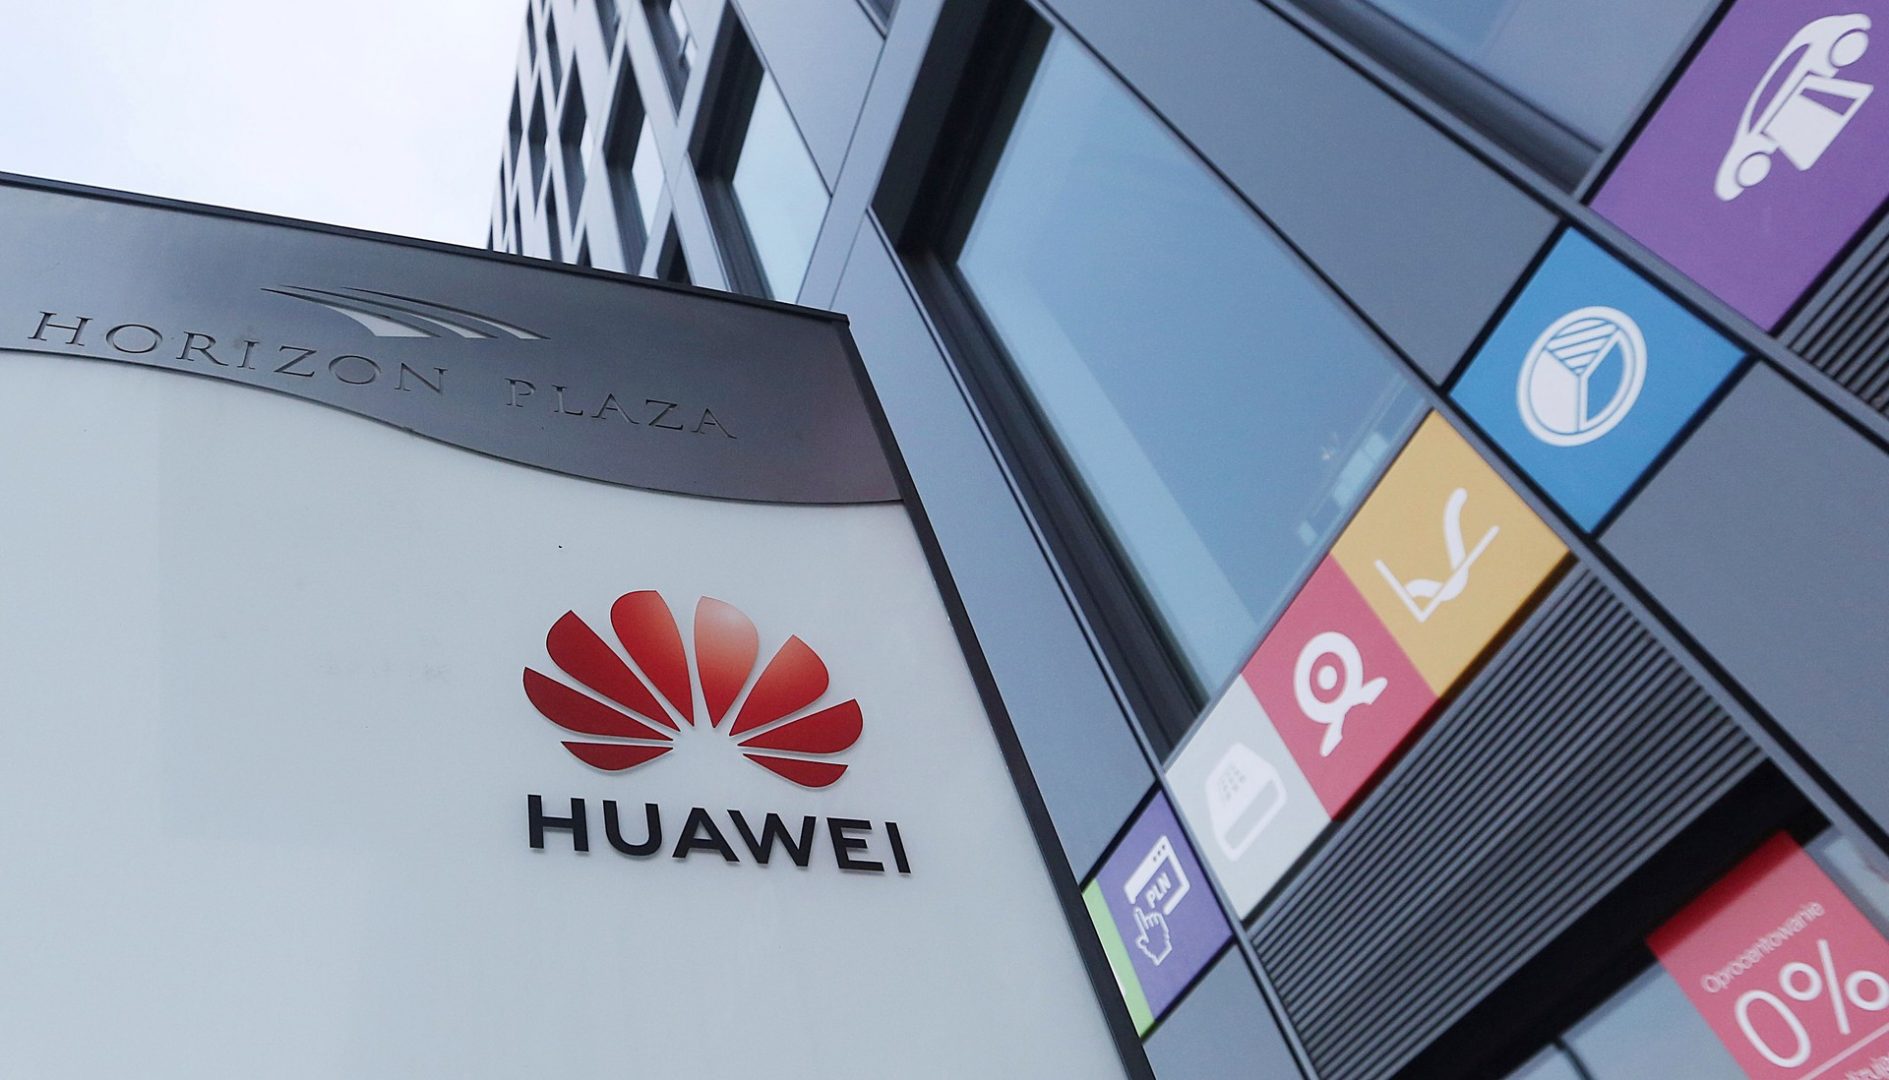 Mỹ đã cấm Huawei cung cấp các hệ thống cho chính phủ nước này